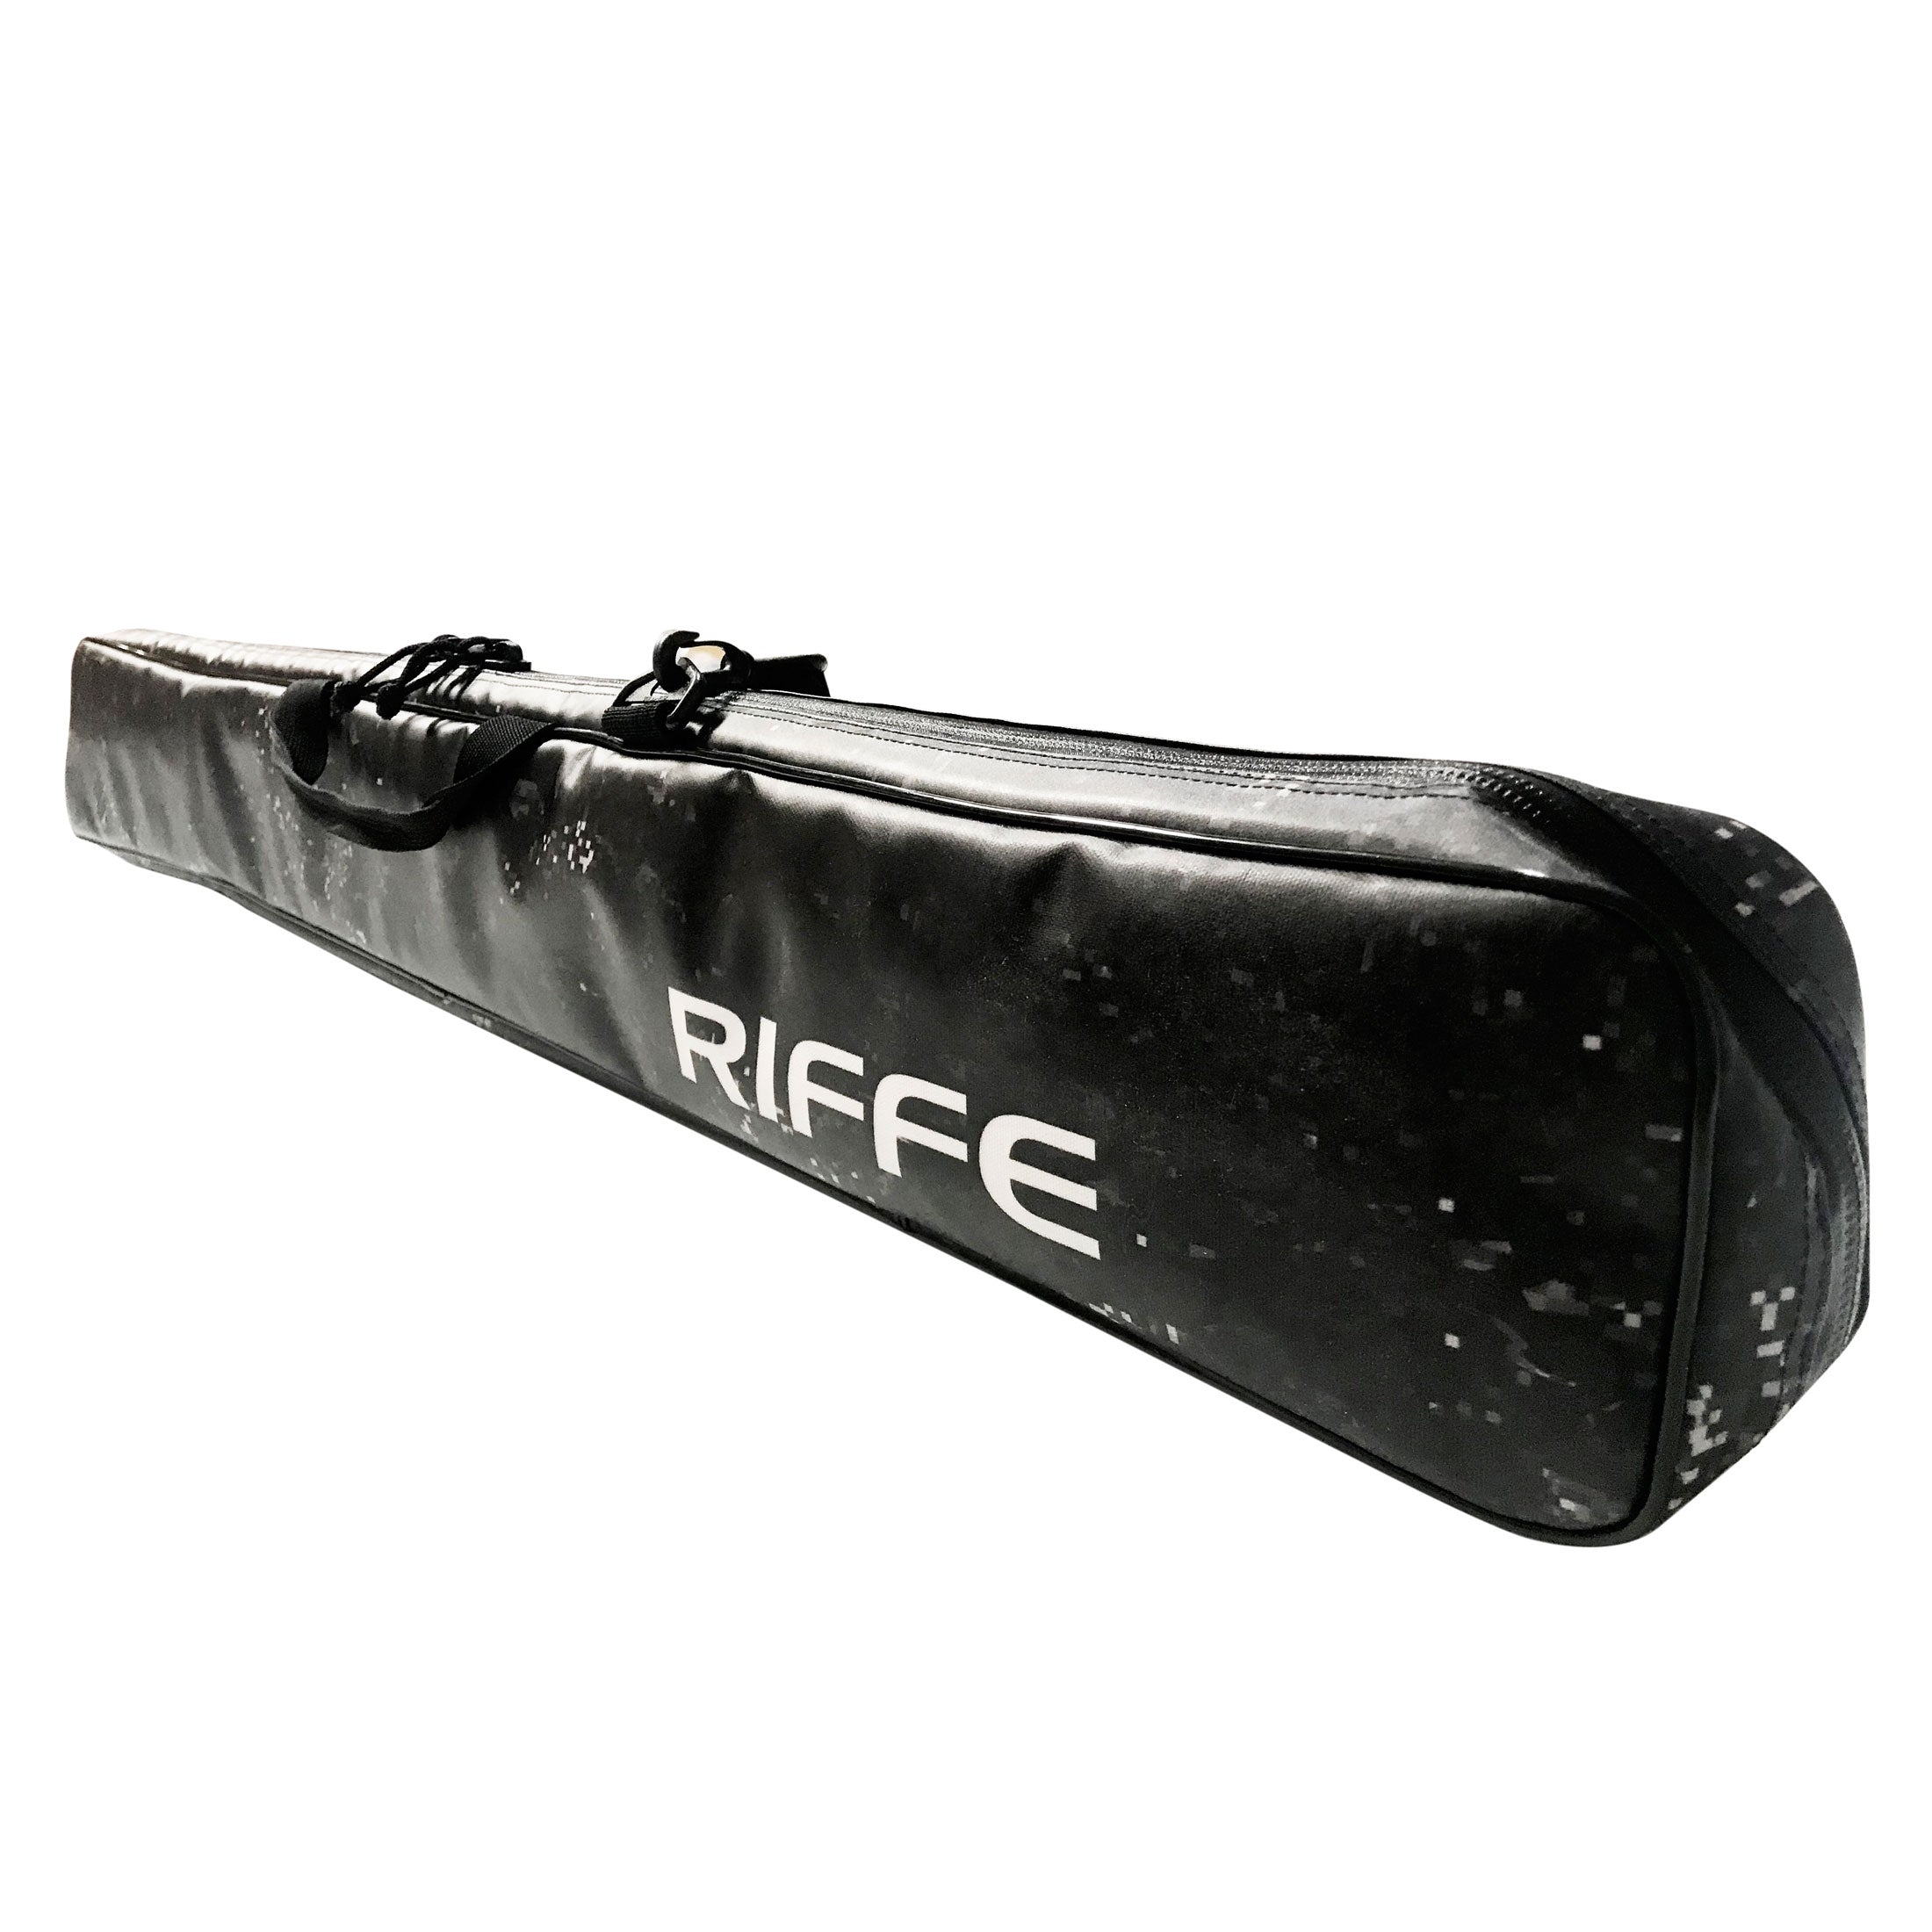 Riffe Slinger Pole Spear Bag 8.5L - FreedivingWarehouse